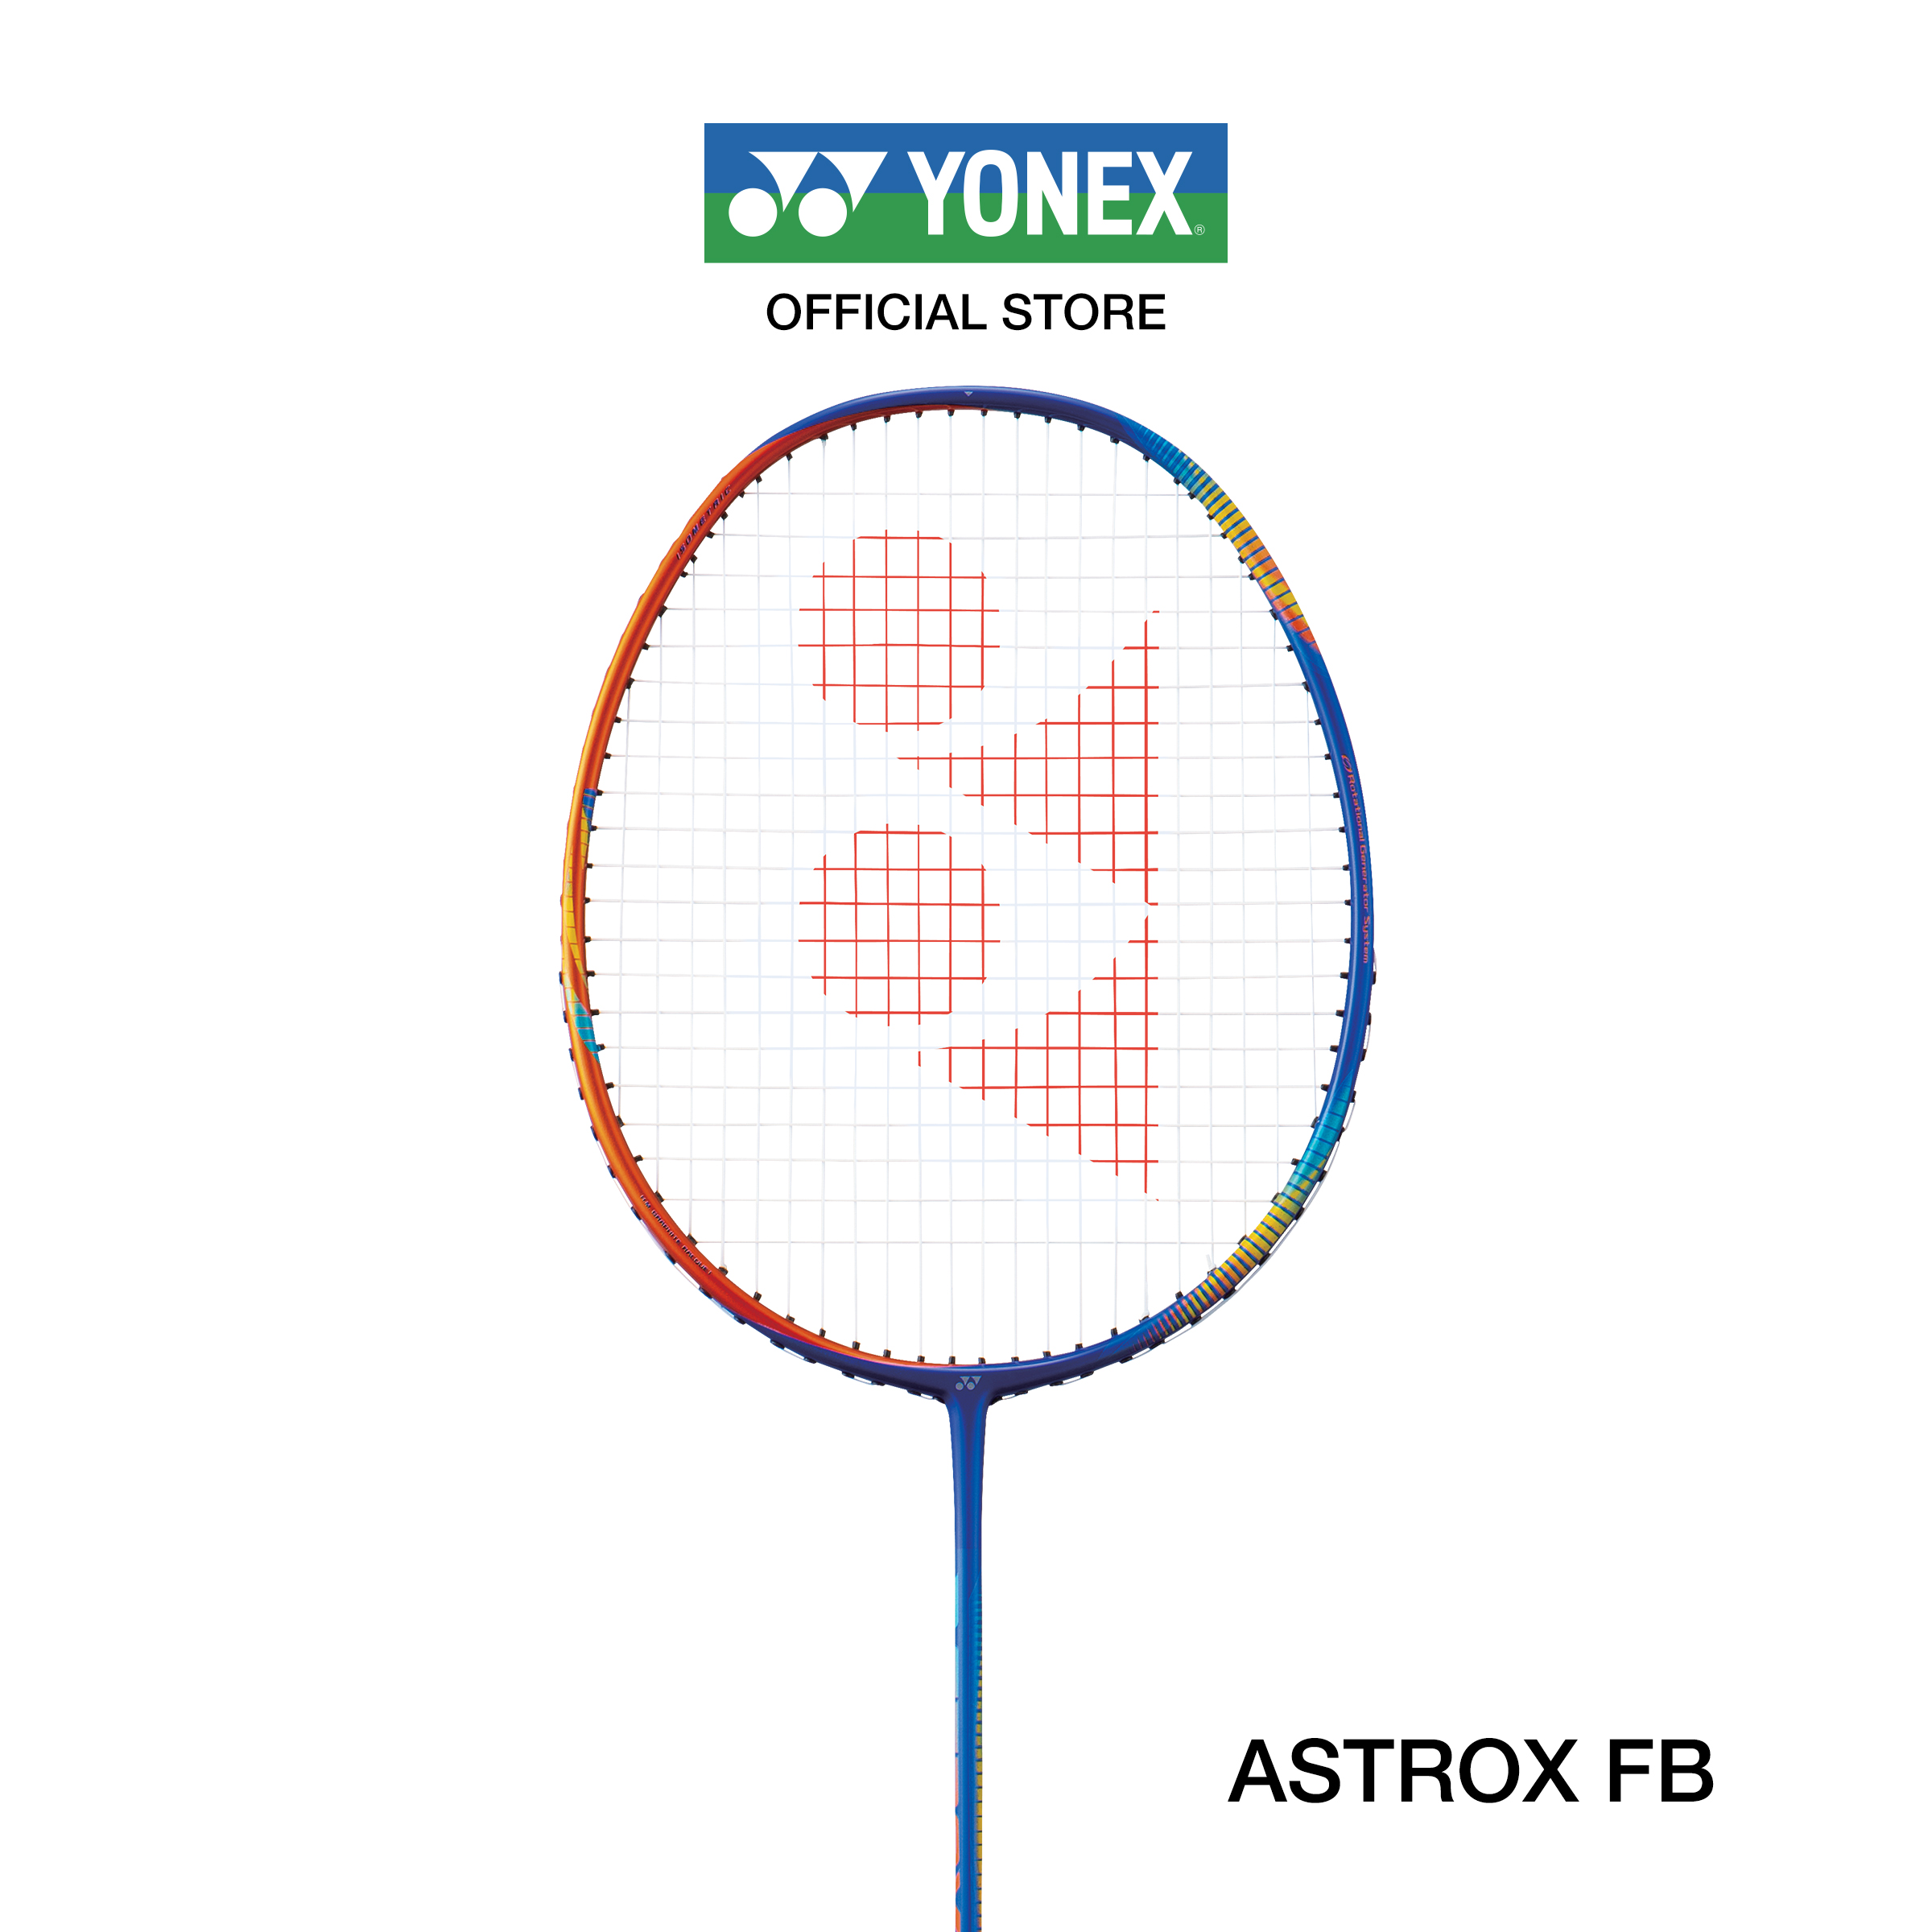 YONEX ไม้แบดมินตัน รุ่น ASTROX FB น้ำหนัก 73g (F G5) ไม้หัวหนัก ก้านกลาง สำหรับผู้เล่นระดับเริ่มต้นถึงระดับกลางต้องการไม้น้ำหนักเบา แถมเอ็นBG65